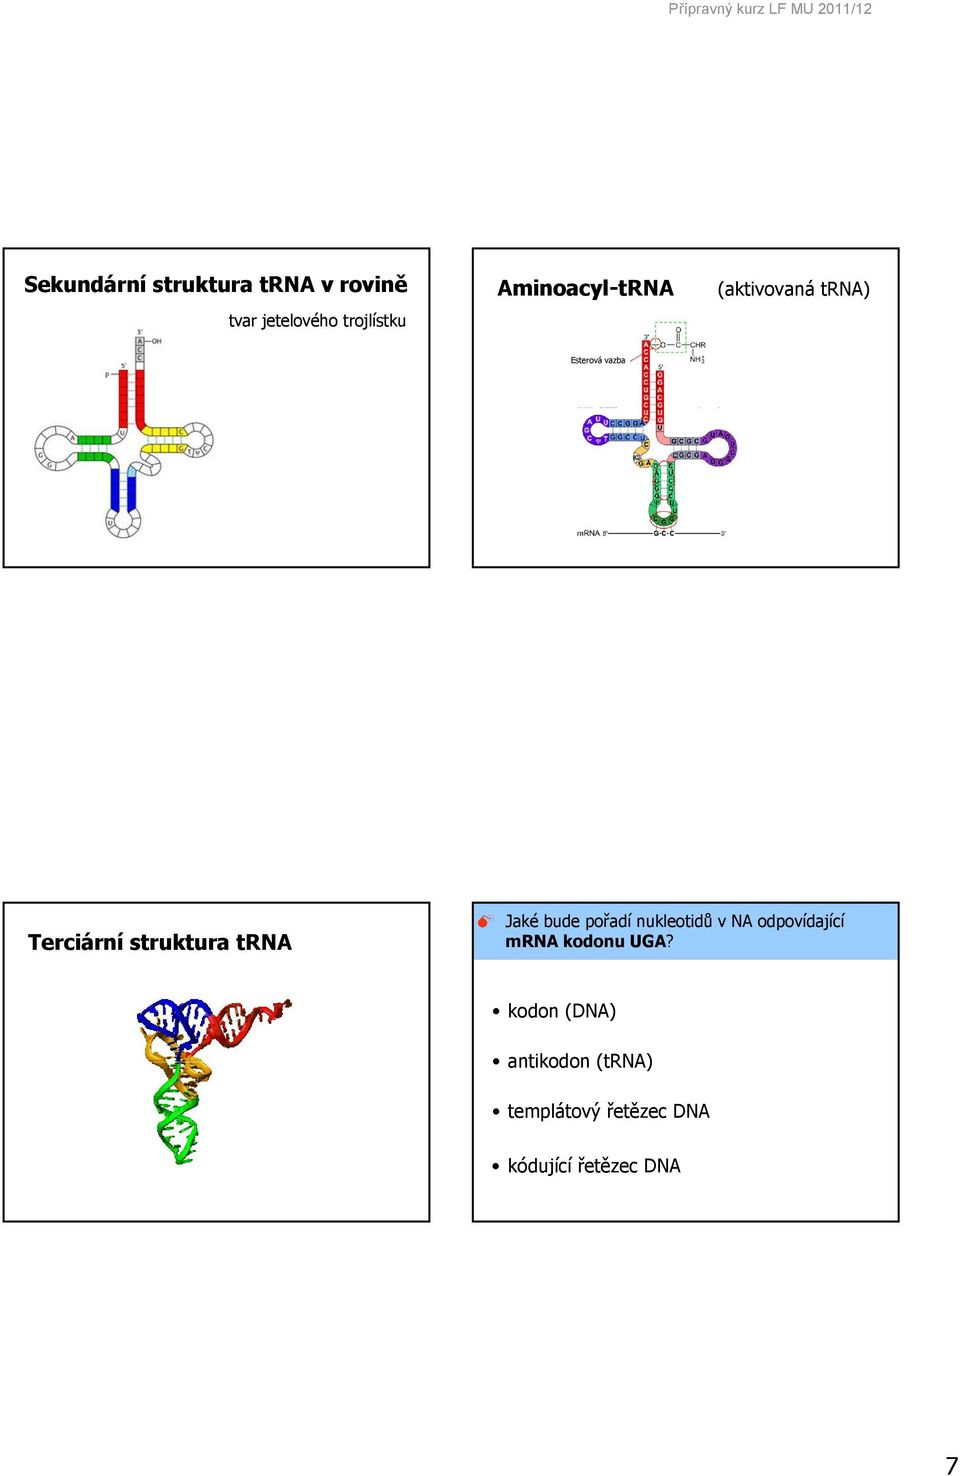 Terciární struktura trna Jaké bude pořadí nukleotidů v NA odpovídající